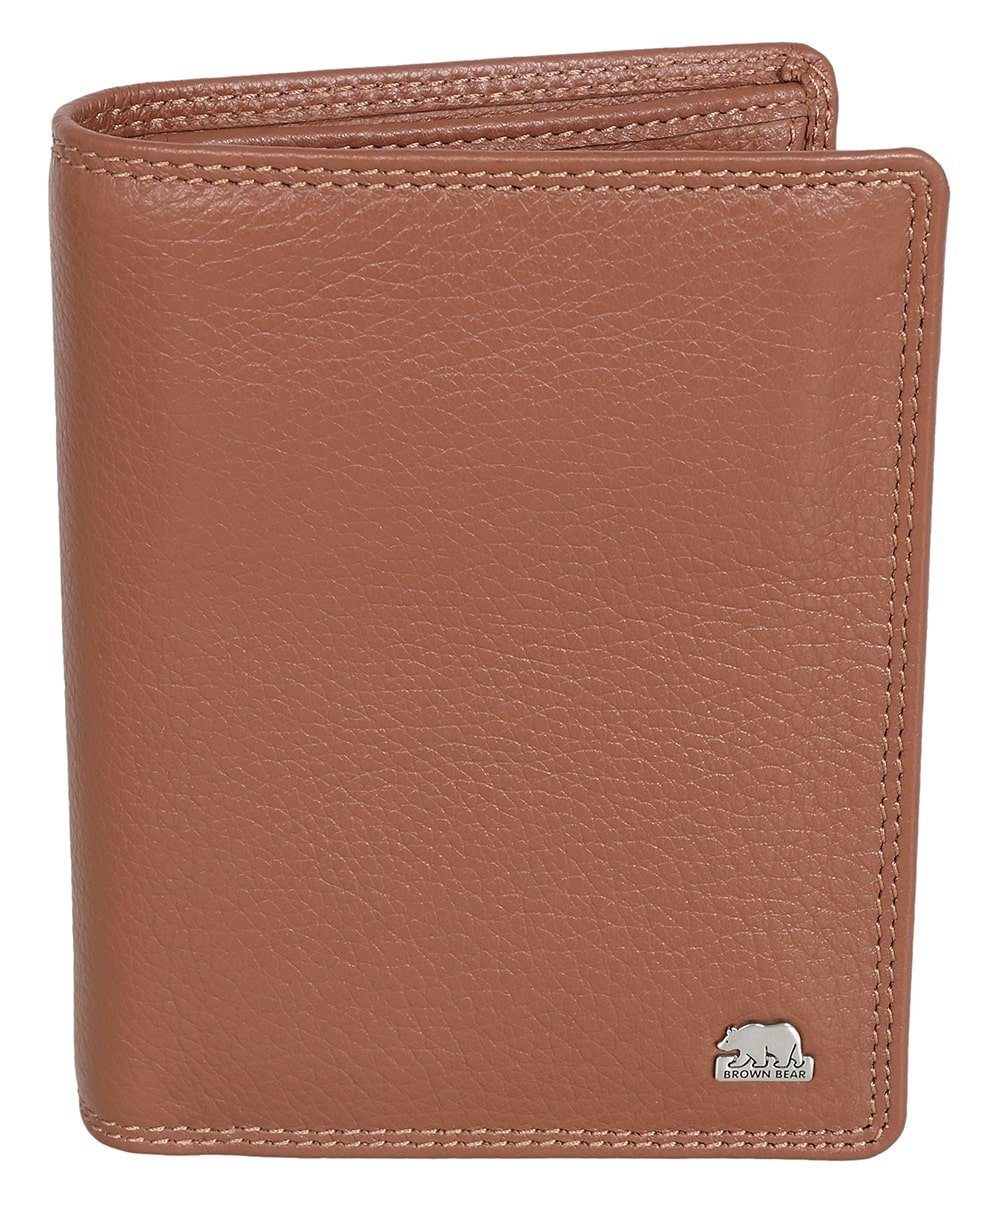 - Münzfach Schutz Brieftasche Brown LF 8005 Farbe: Bear RFID Braun-Camel, Braun D Cognac Geldbörse Classic mit Lederbörse